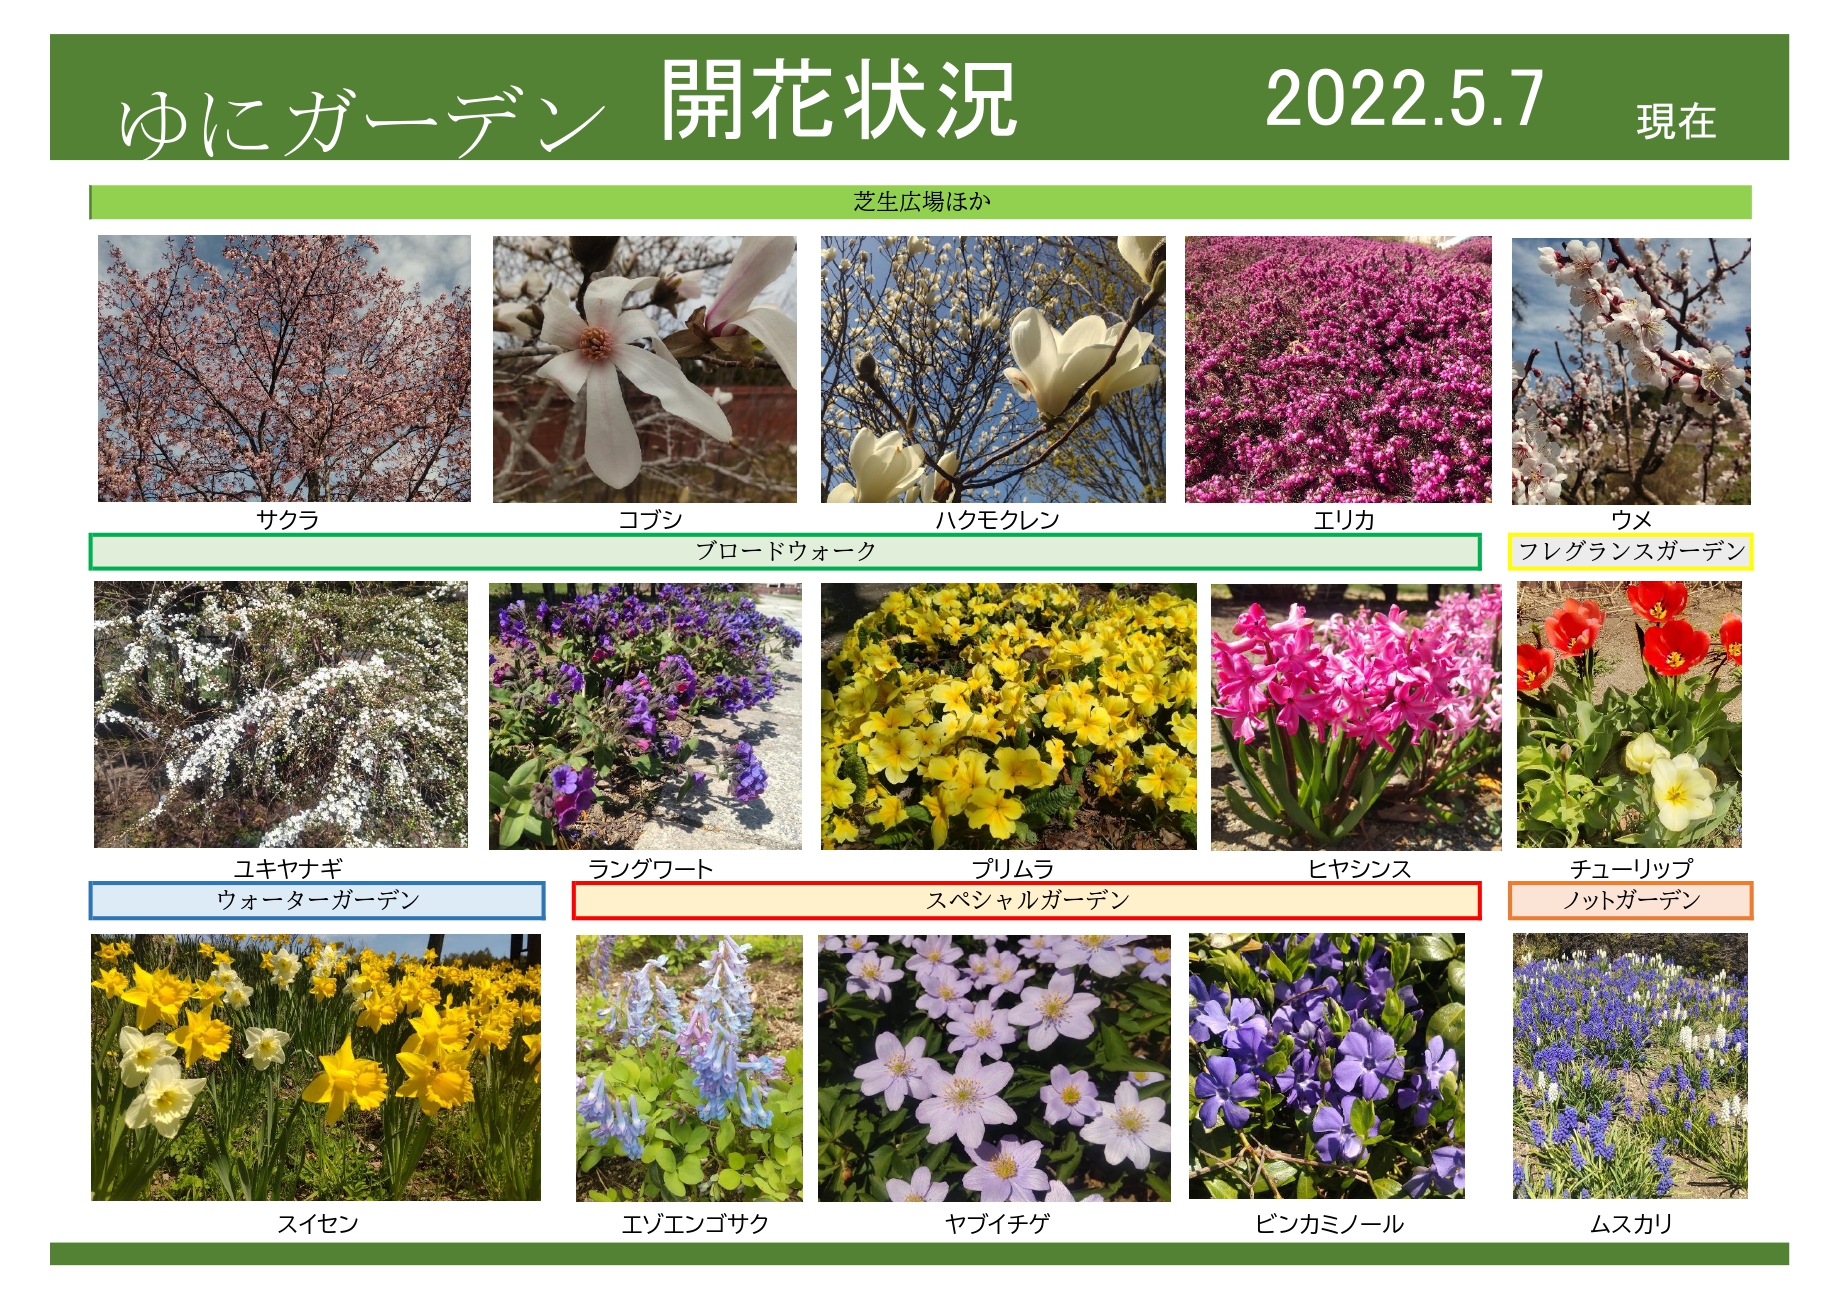 ゆにガーデン 5月7日現在 開花情報 お庭について 北海道由仁町の庭園ゆにガーデン